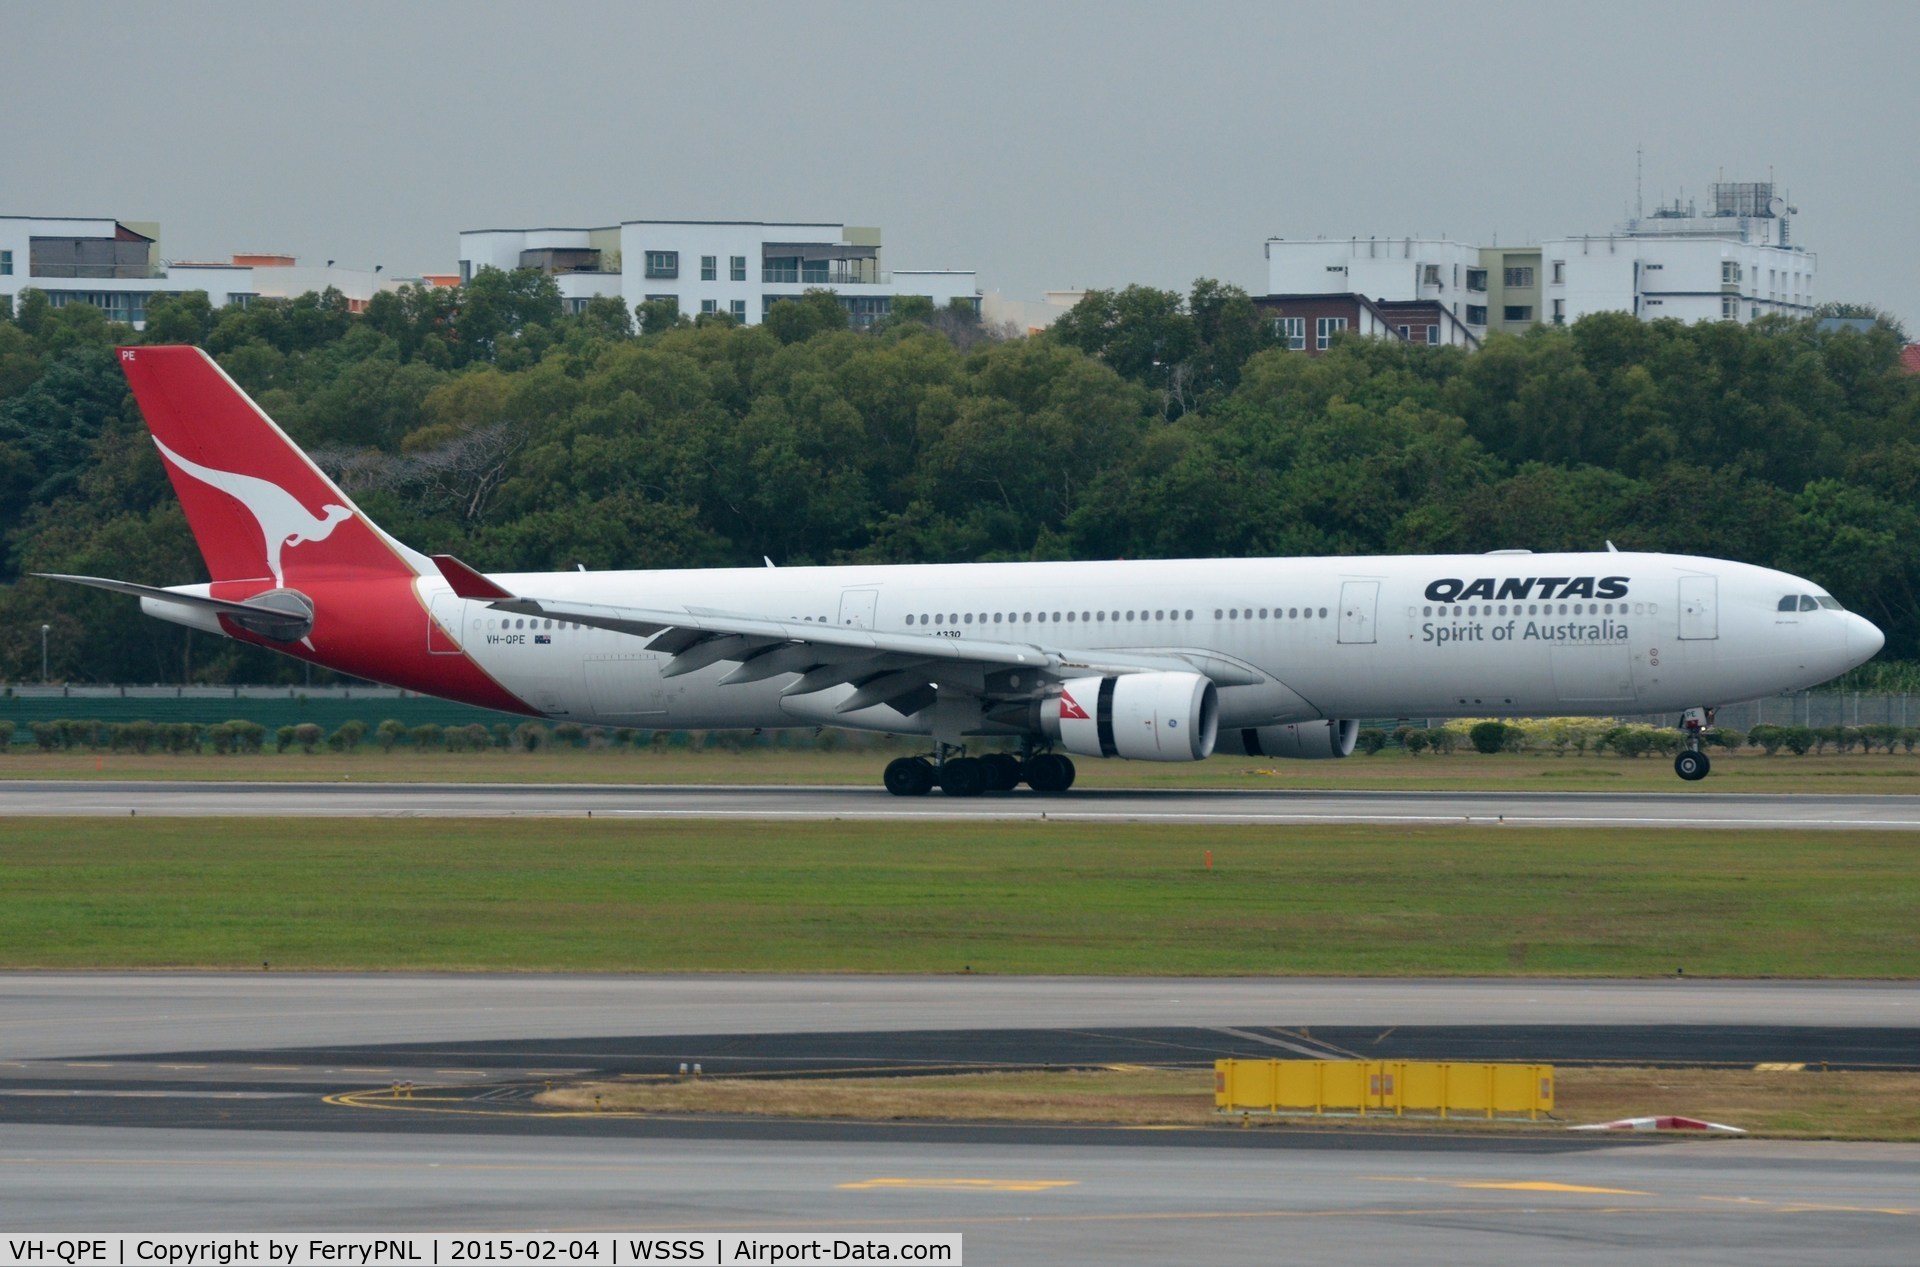 VH-QPE, 2004 Airbus A330-303 C/N 0593, Qantas A333 landing in SIN